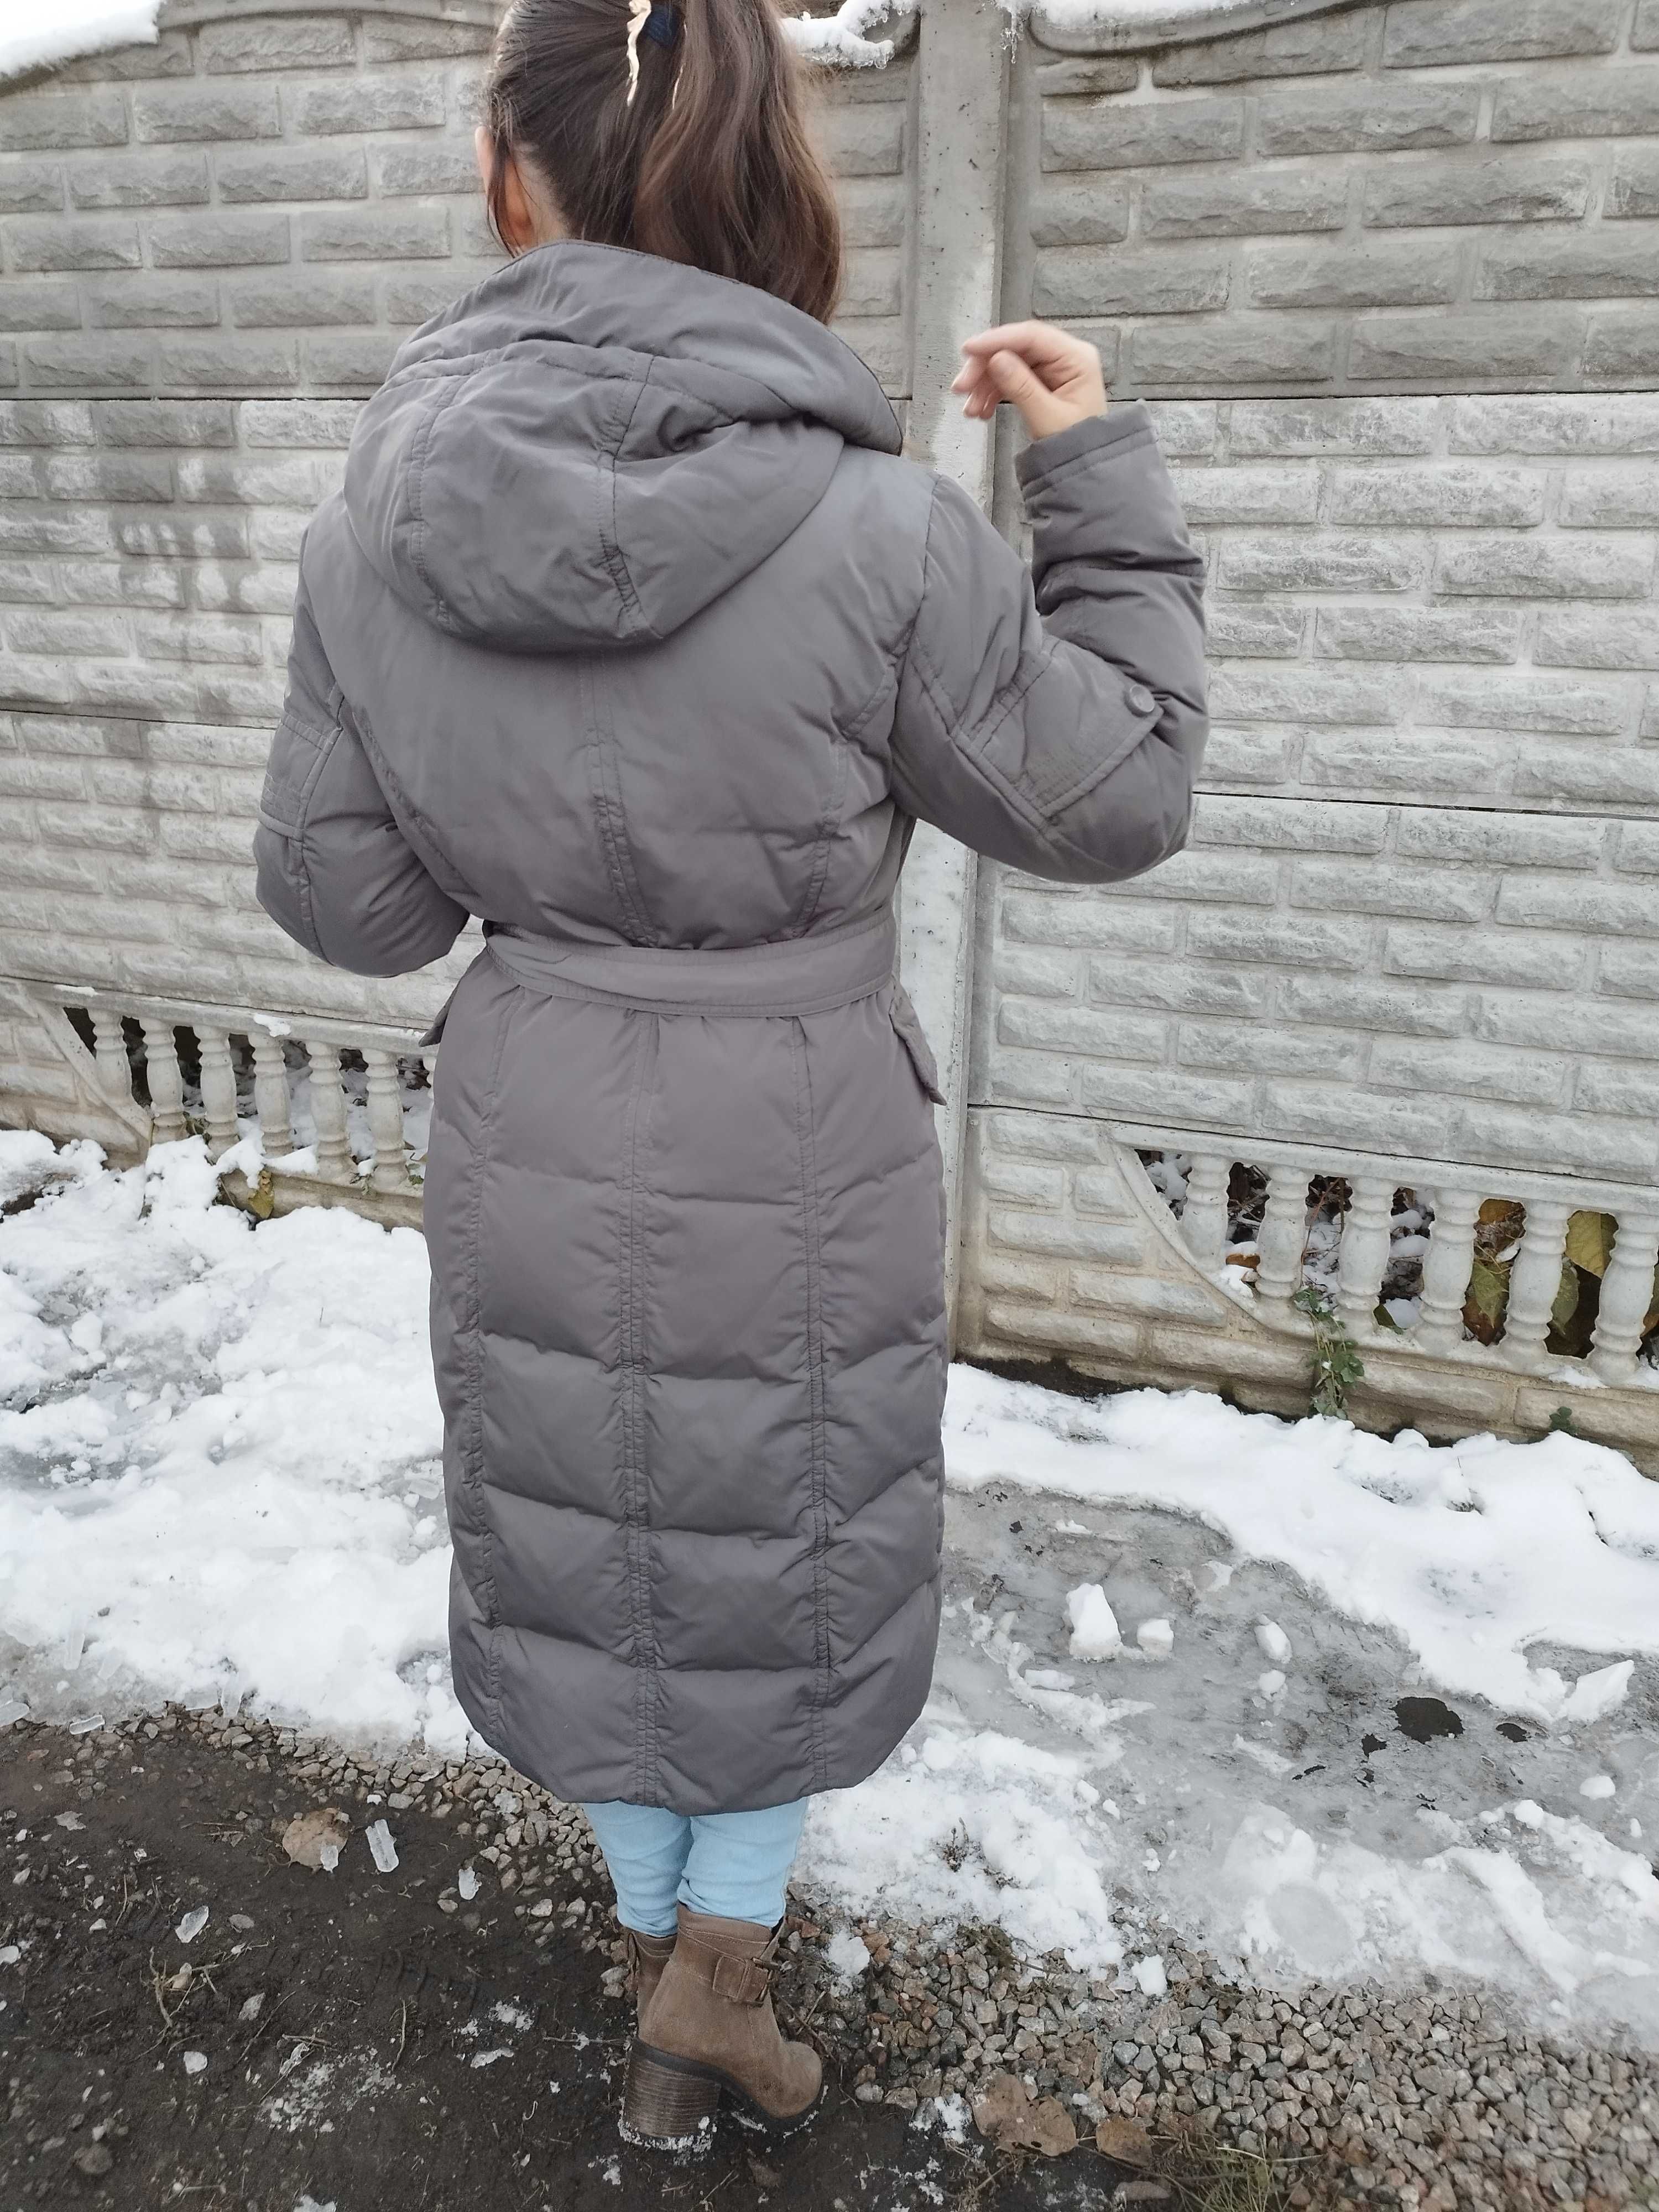 Женская куртка-пальто осень-зима (S-M)